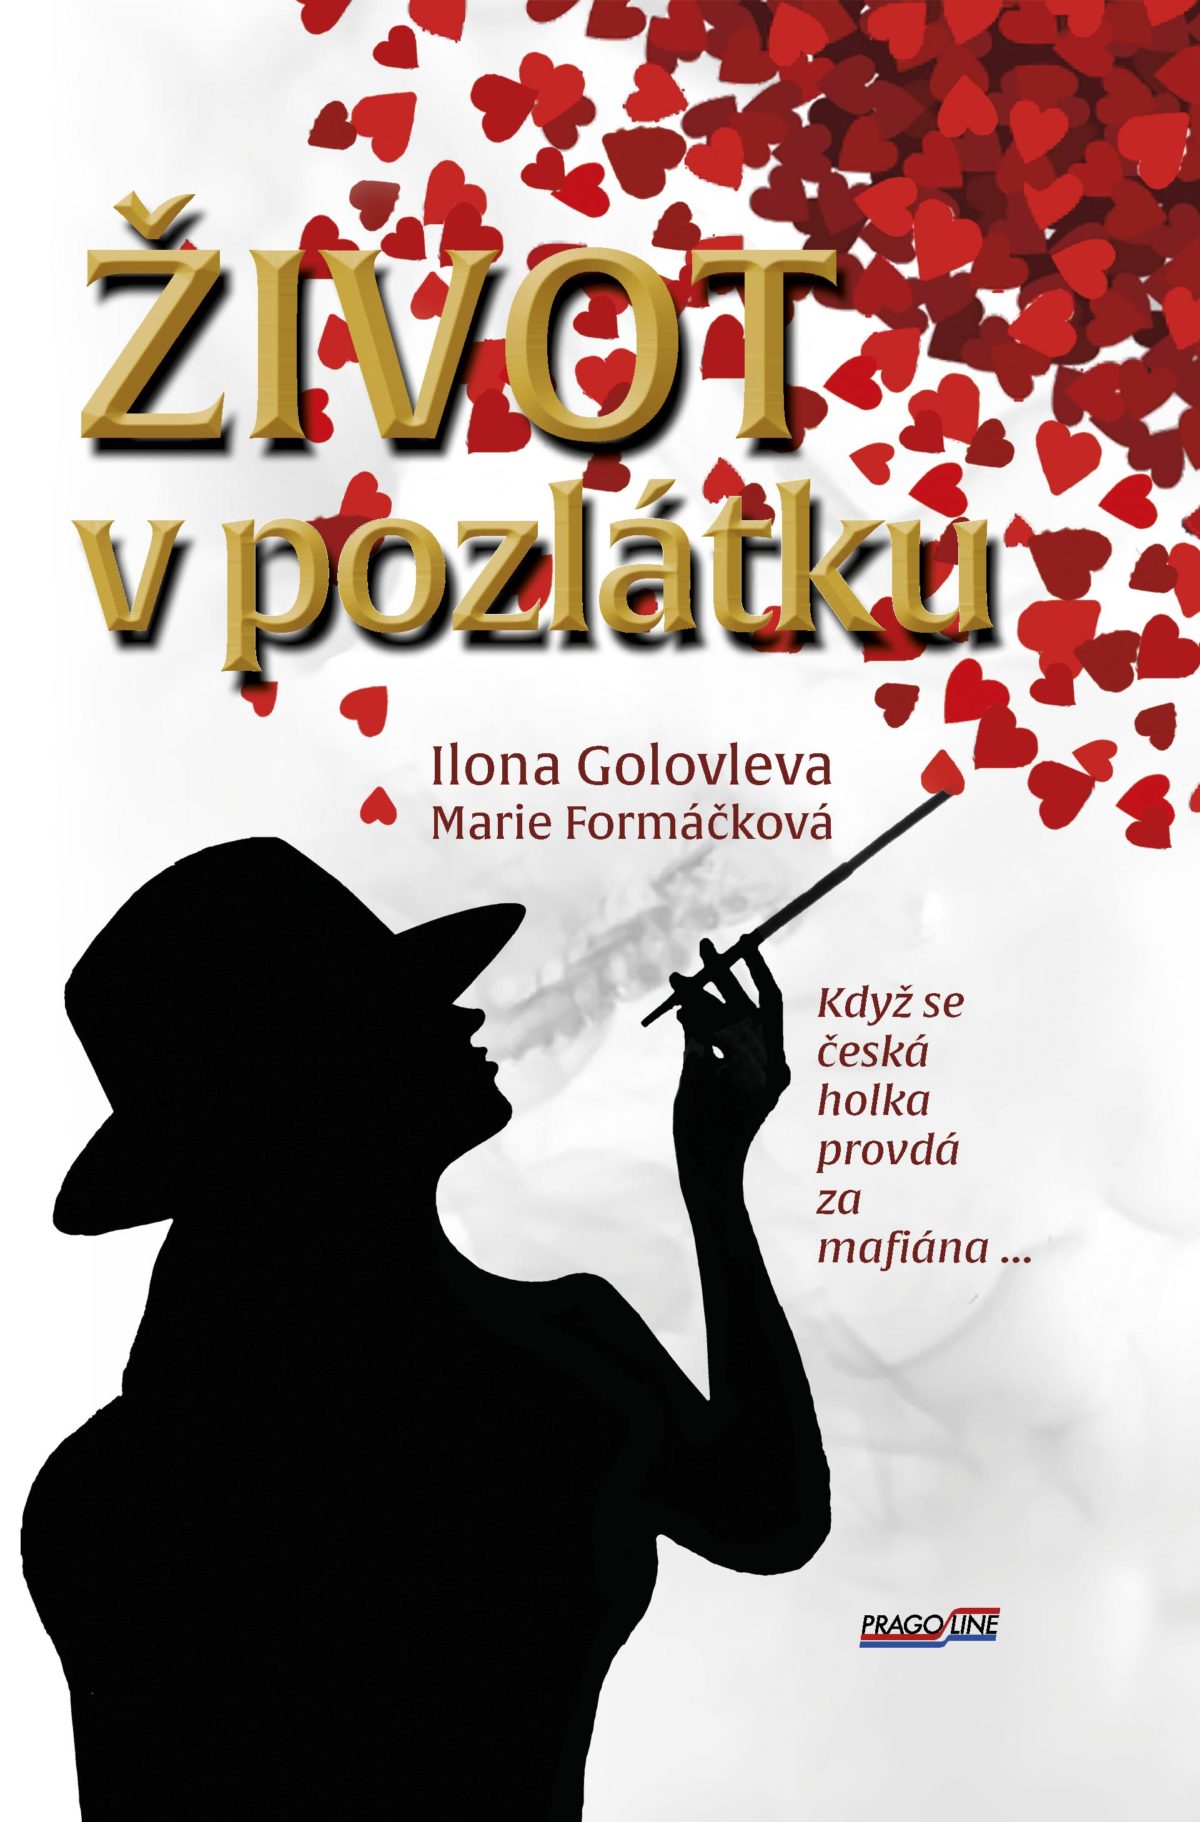 Nová kniha ŽIVOT V POZLÁTKU je tu, autorkami jsou Ilona Golovleva a Marie Formáčková